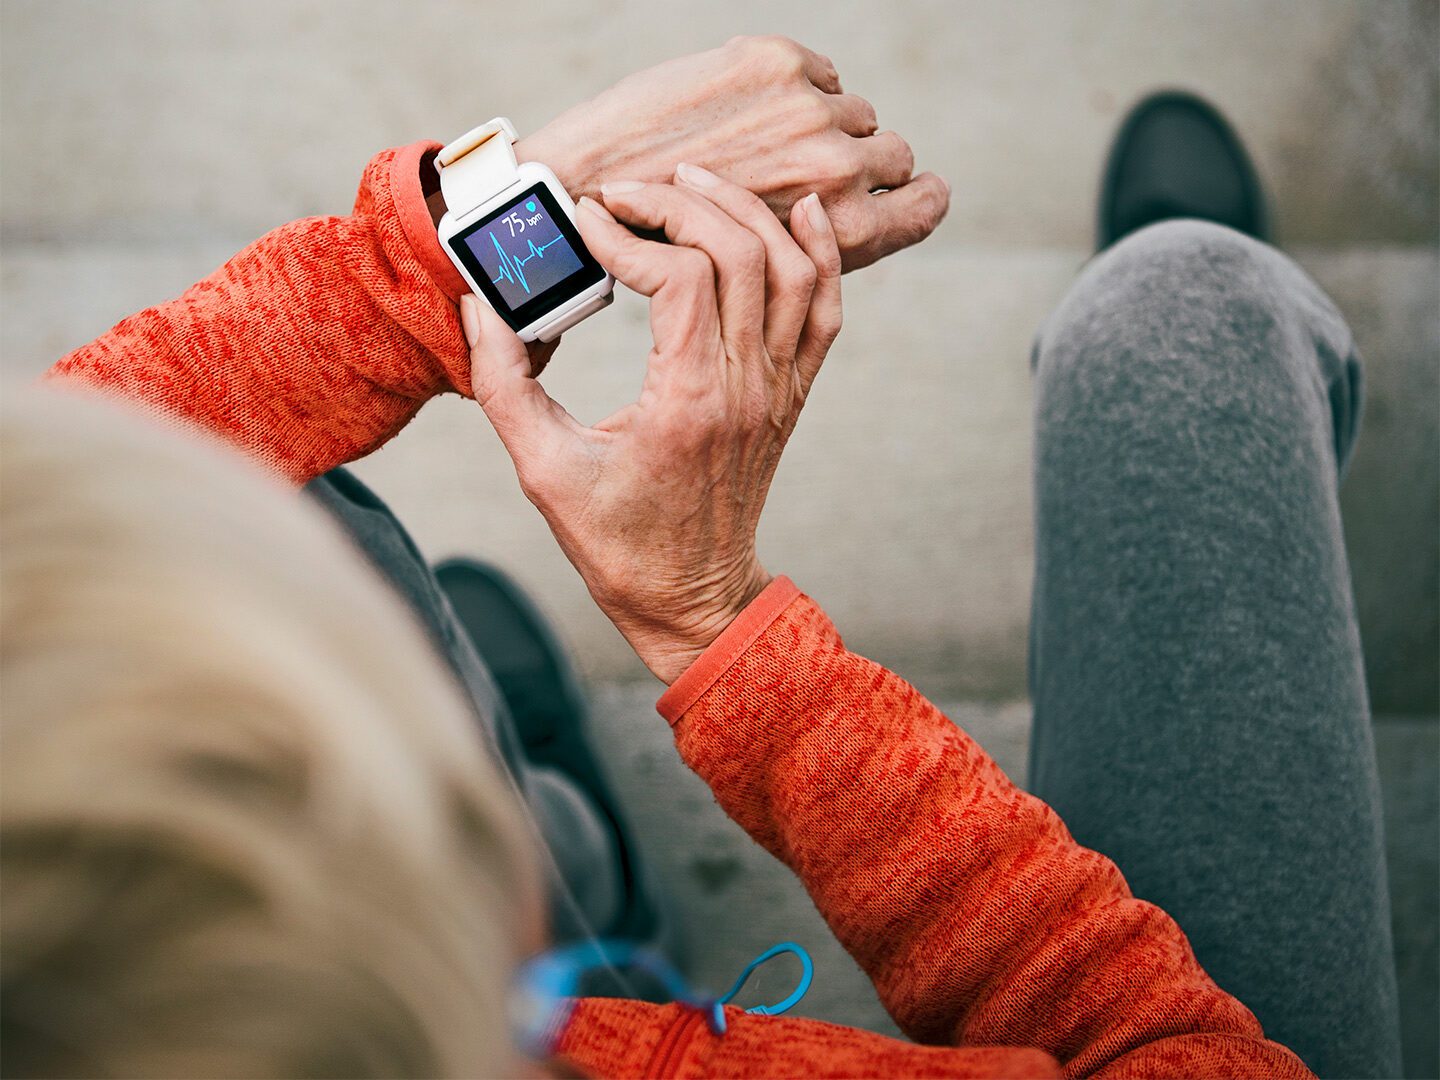 Eine Frau überprüft ihre Herzfrequenz auf einer Smartwatch. Diese könnten bei der Prävention unterstützen und ein wichtiges Element der Gesundheitsversorgung werden